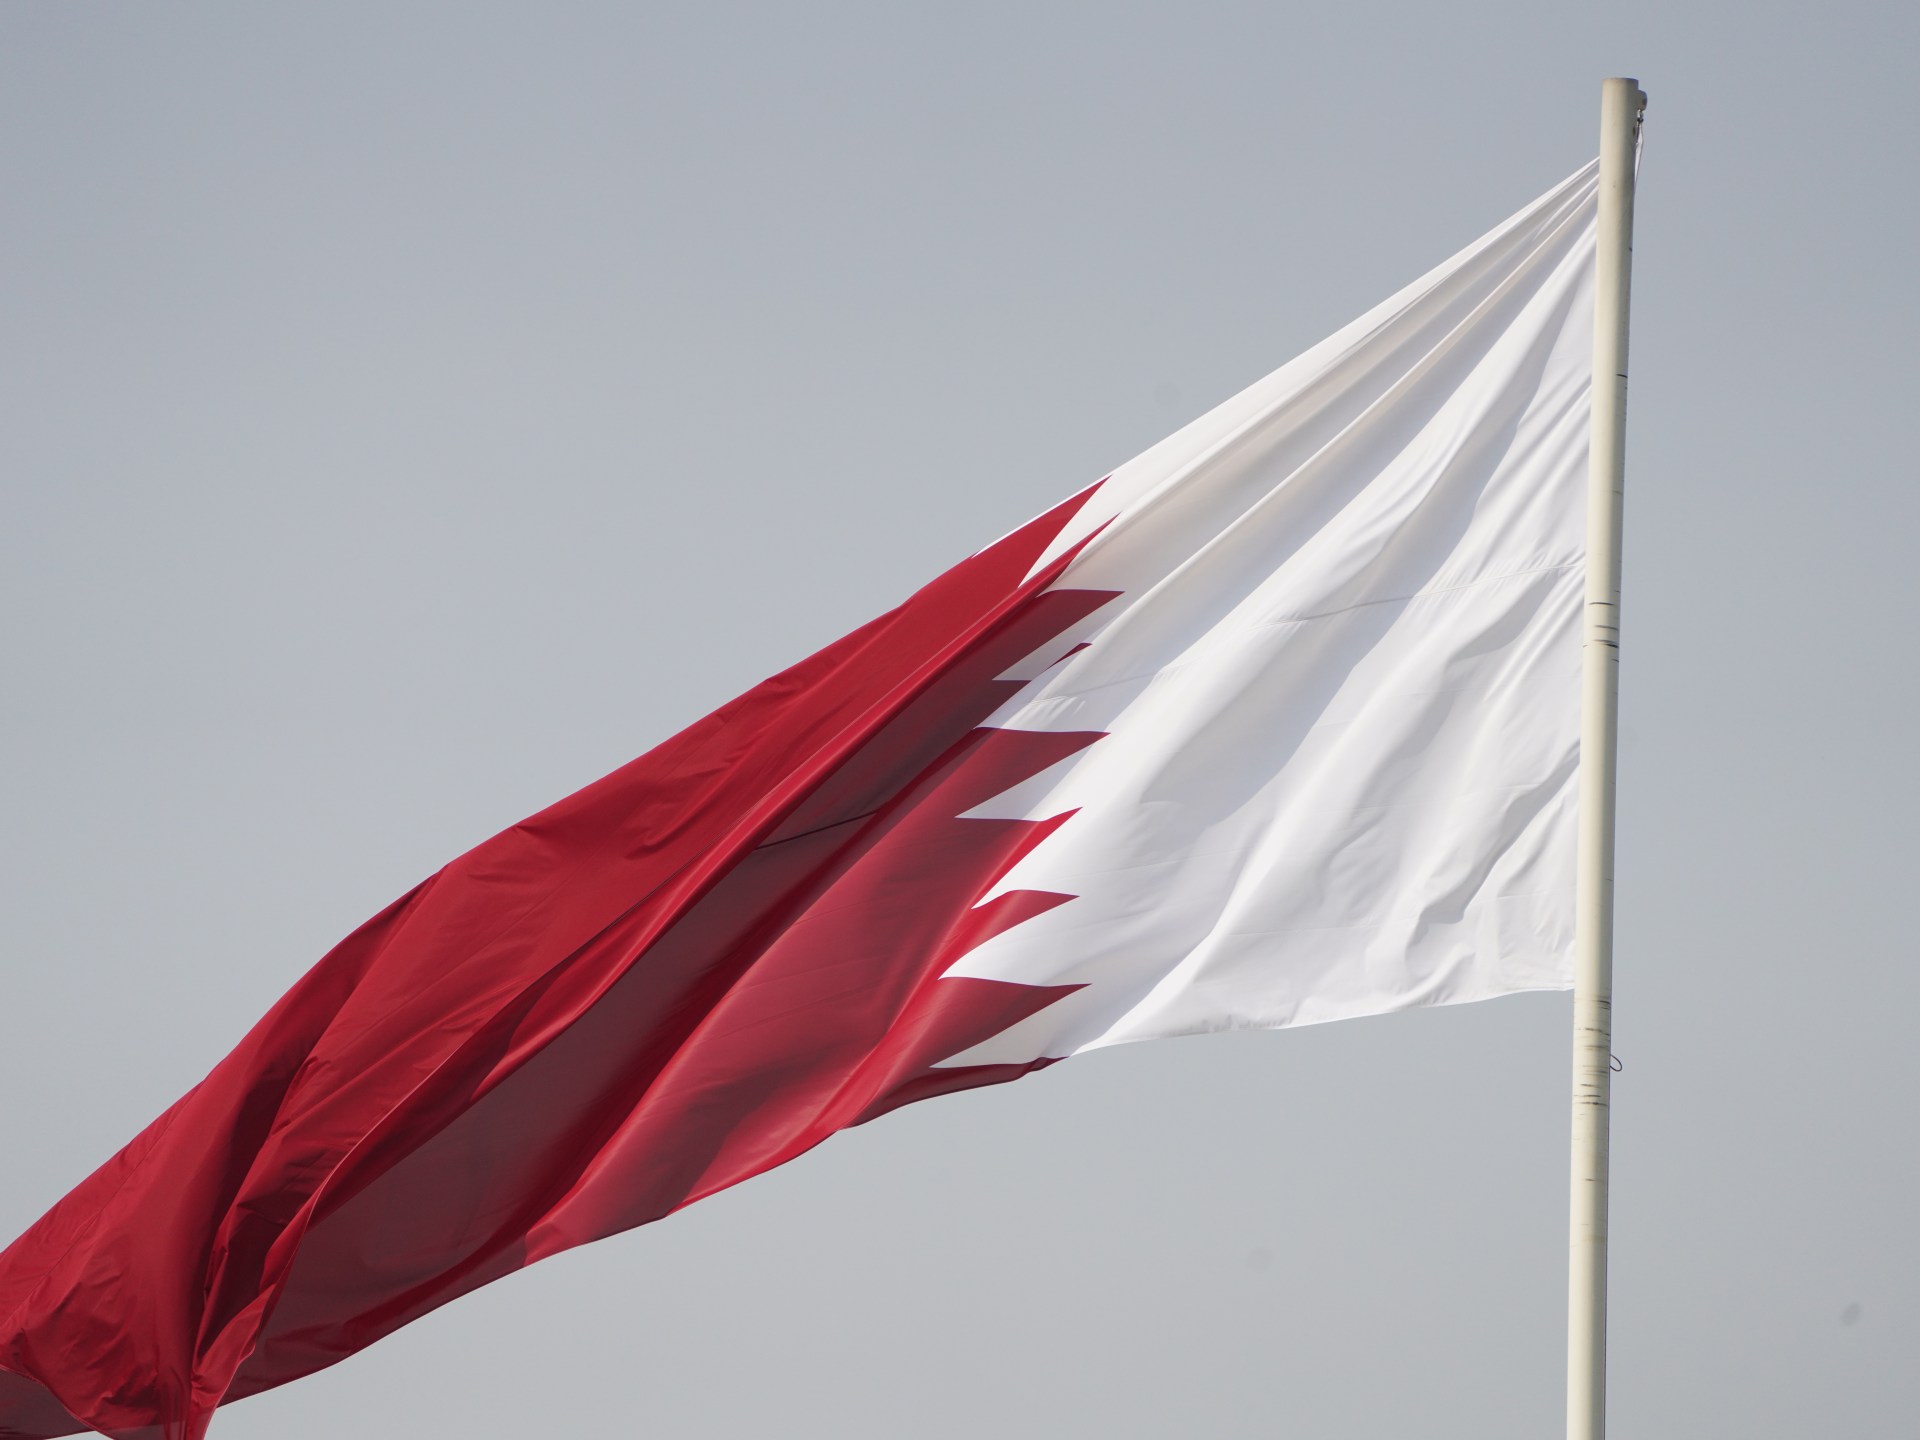 قطر ملتزمة بدور الوسيط النزيه بين إسرائيل وحماس: مصادر دبلوماسية |  أخبار الحرب الإسرائيلية على غزة